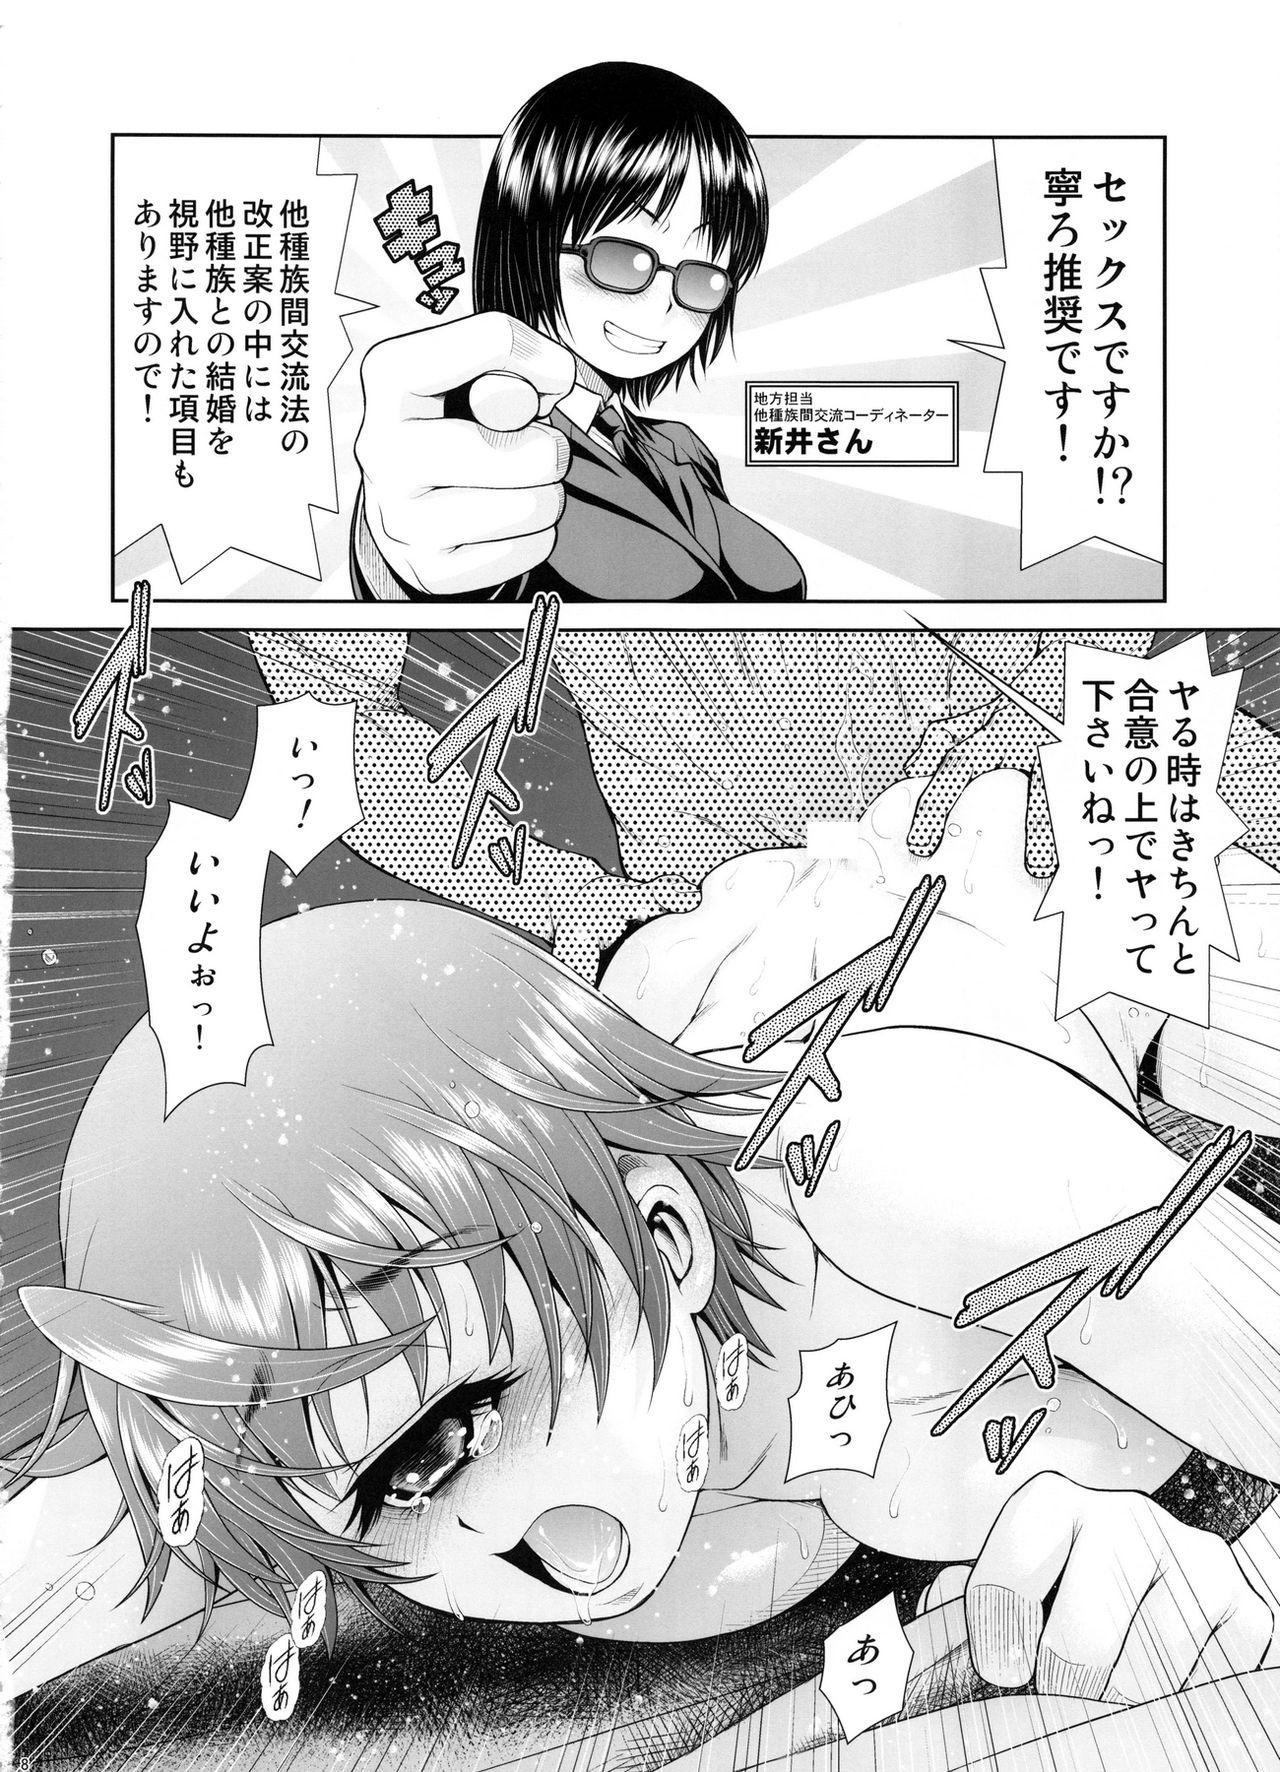 Outdoor Monmusu Biyori - Monster musume no iru nichijou Consolo - Page 7